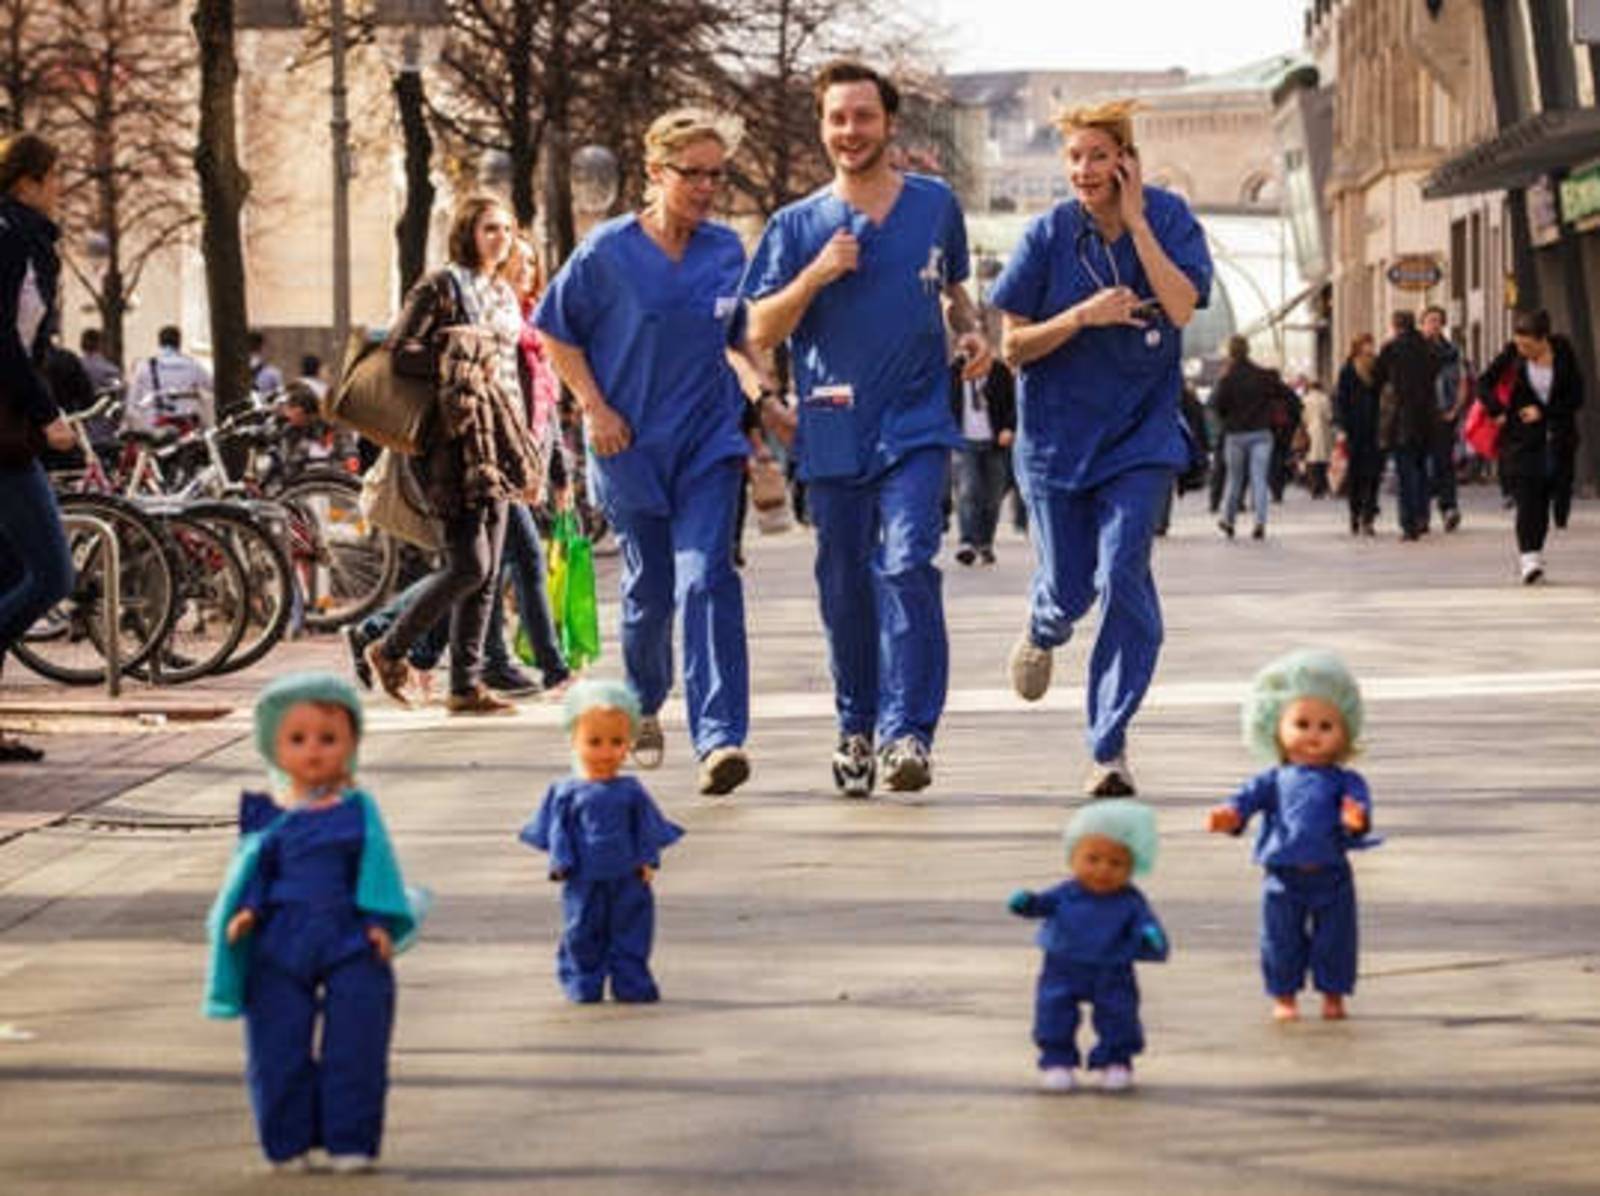 Zwei Frauen und ein Mann in blauer OP-Kleidung laufen durch die hannoversche Fußgängerzone. Sie sind umringt von stehenden Kinderpuppen, die genauso gekleidet sind wie sie.